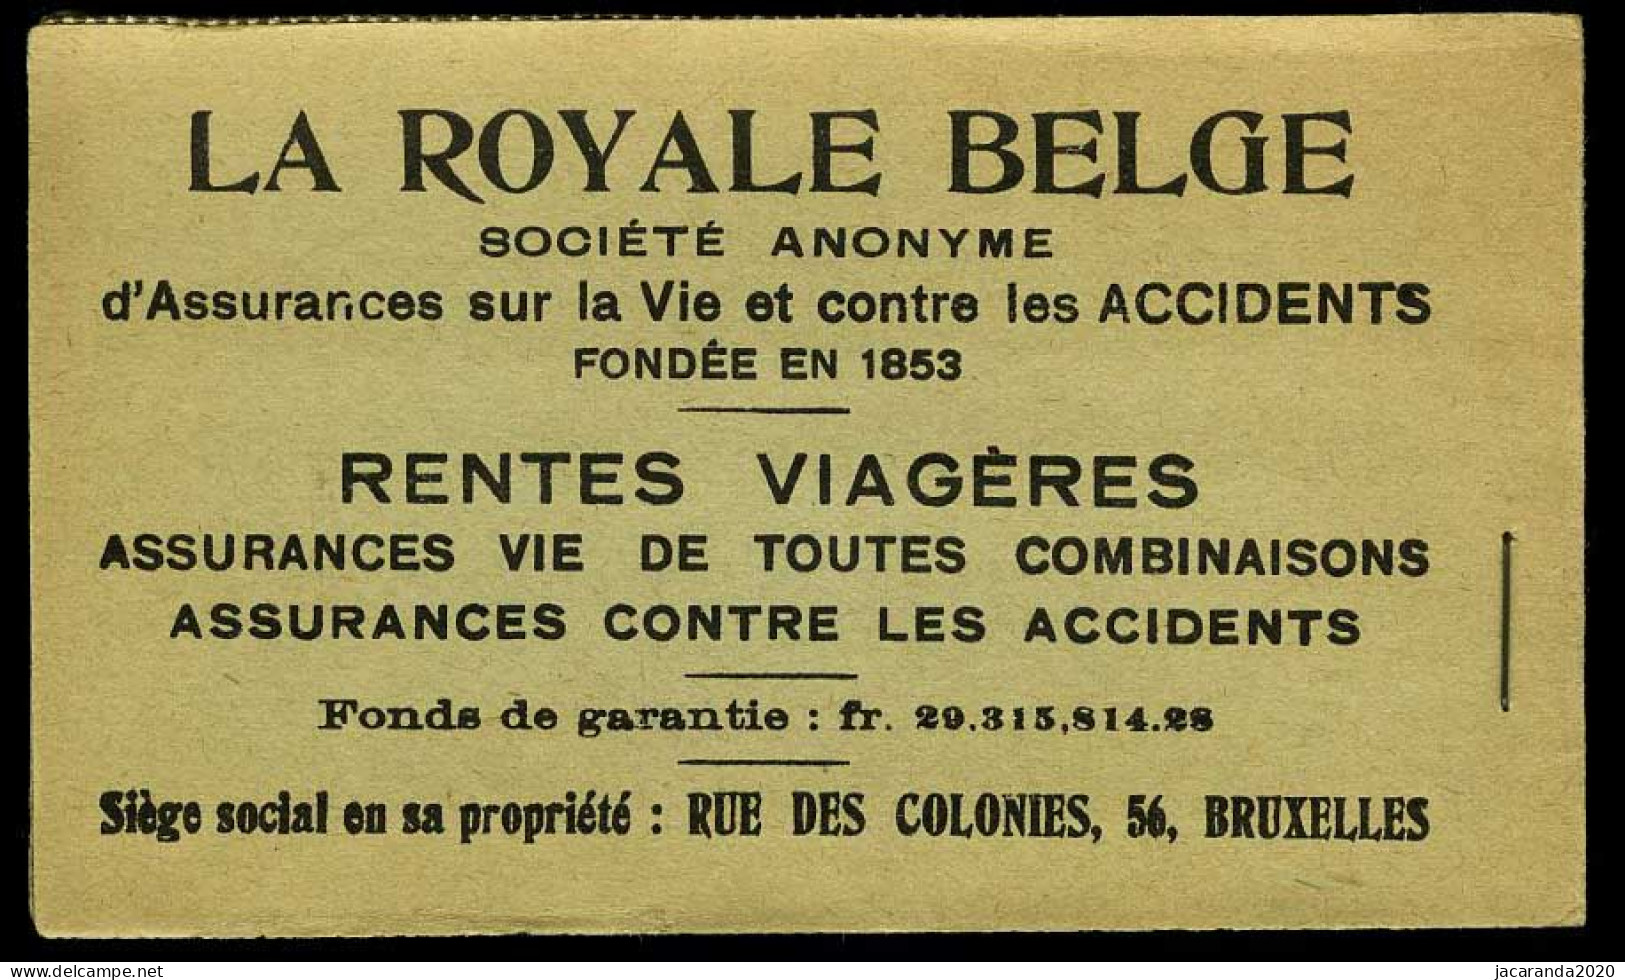 België Boekje A13d(b) - Volledig - Groen Kaftje - 50 Zegels - Doorschijnende Schutblaadjes - 1914  - Zeer Mooi - 1907-1941 Oude [A]